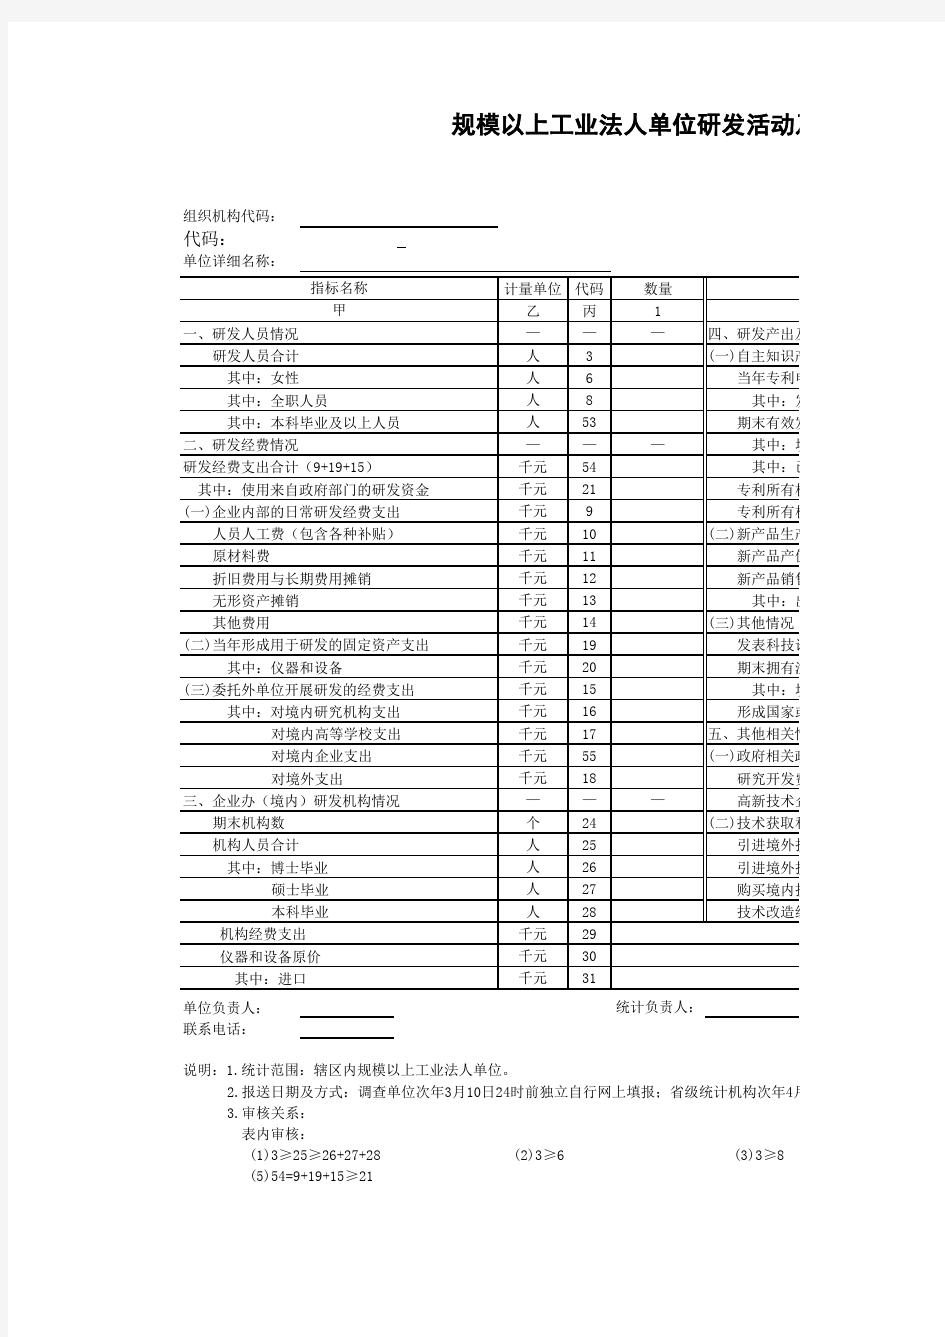 【国家统计局国统字(2015)95号】107-1,107-2